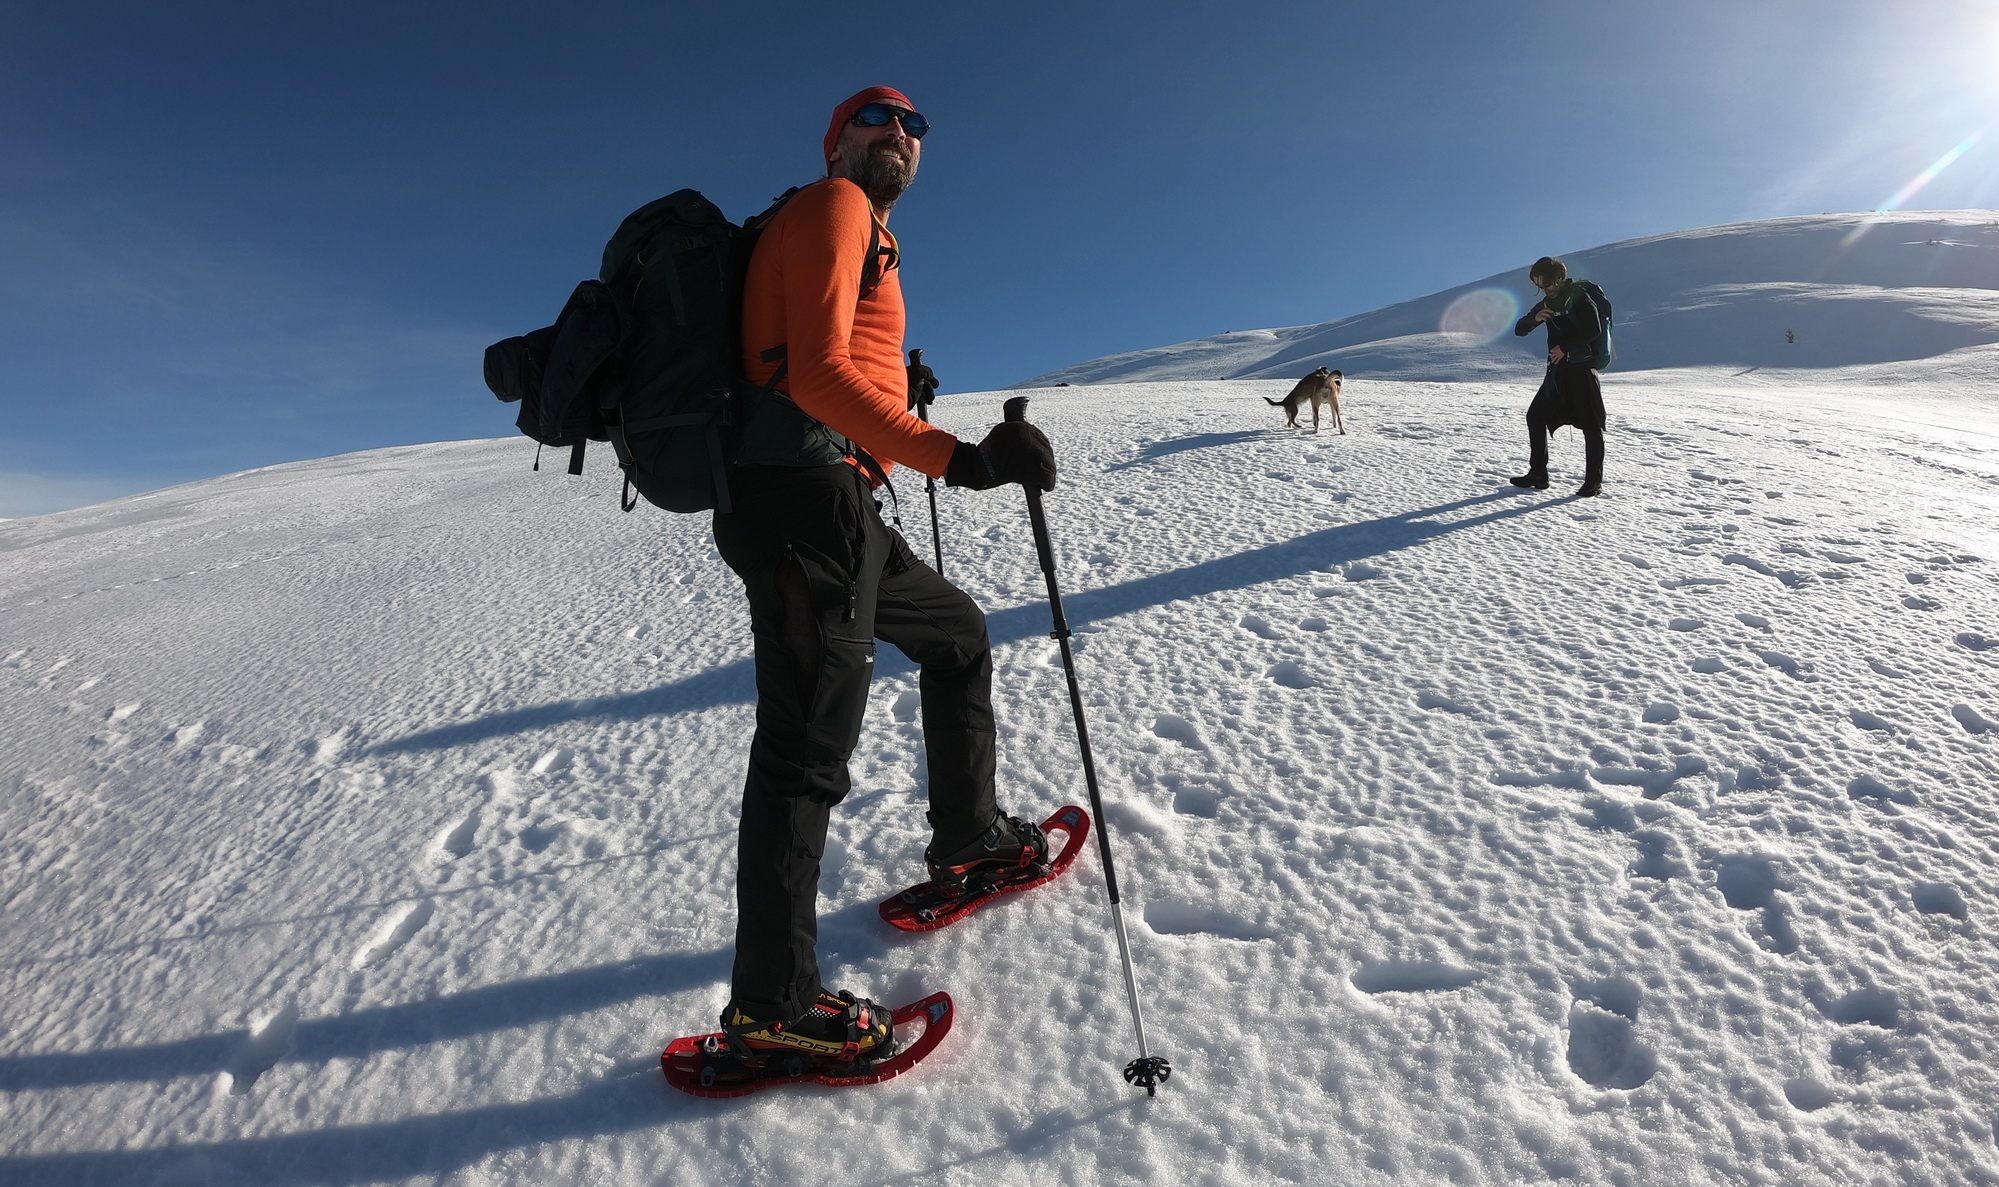 <h3>Trekking cu rachetele de zăpadă</h3>Muntele, natura și zăpada devin mult mai accesibile iarna cu ajutorul rachetelor de zăpadă! Vino cu noi la una din ieșirile de iarnă pentru a te bucura de zăpadă și peisajele hivernale!  <br><br> <a href="https://www.verticaladventure.ro/ianuarie" class="btn btn-cmd">Vezi detalii</a>